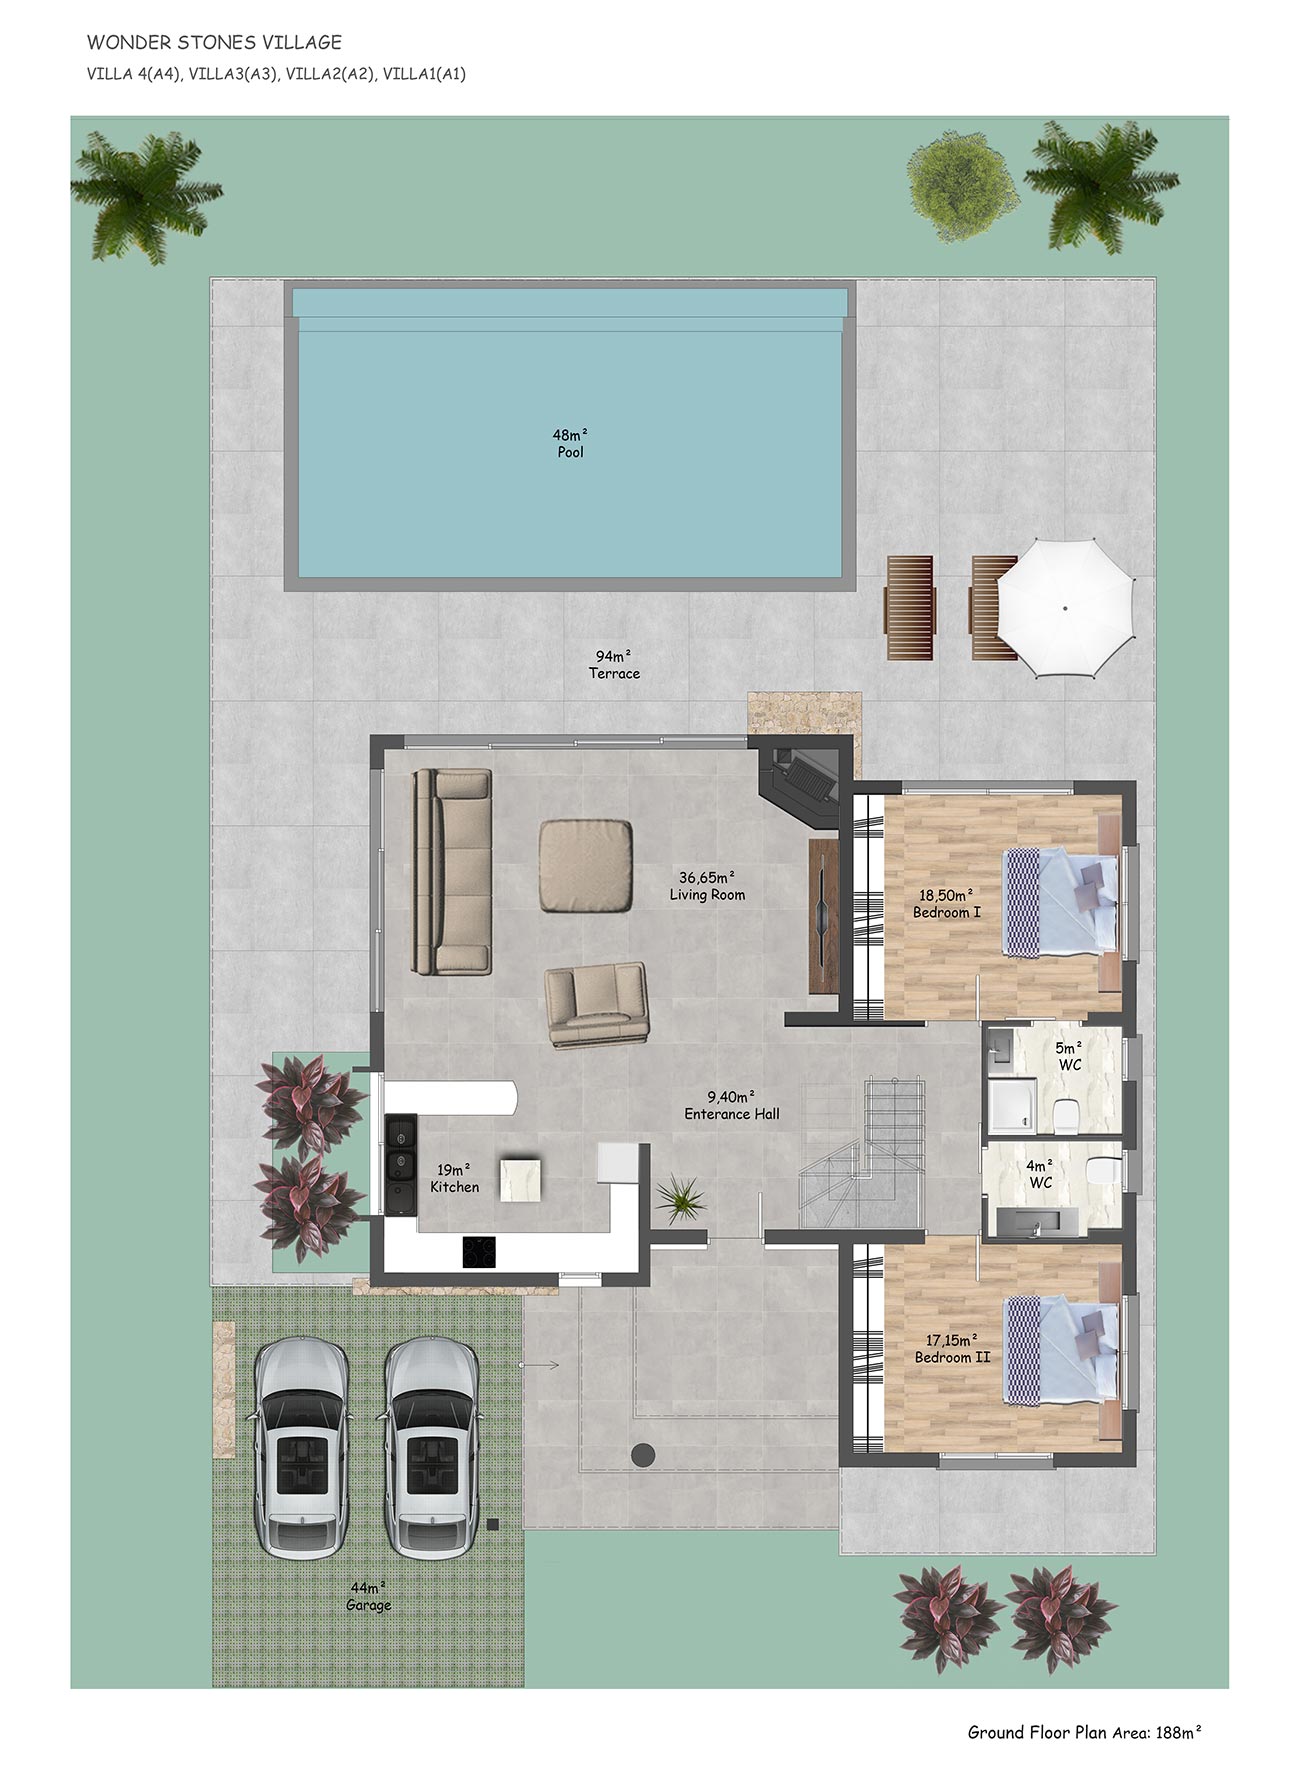 Floor Plan - 4 bedroom villa (1-4) / Ground floor 